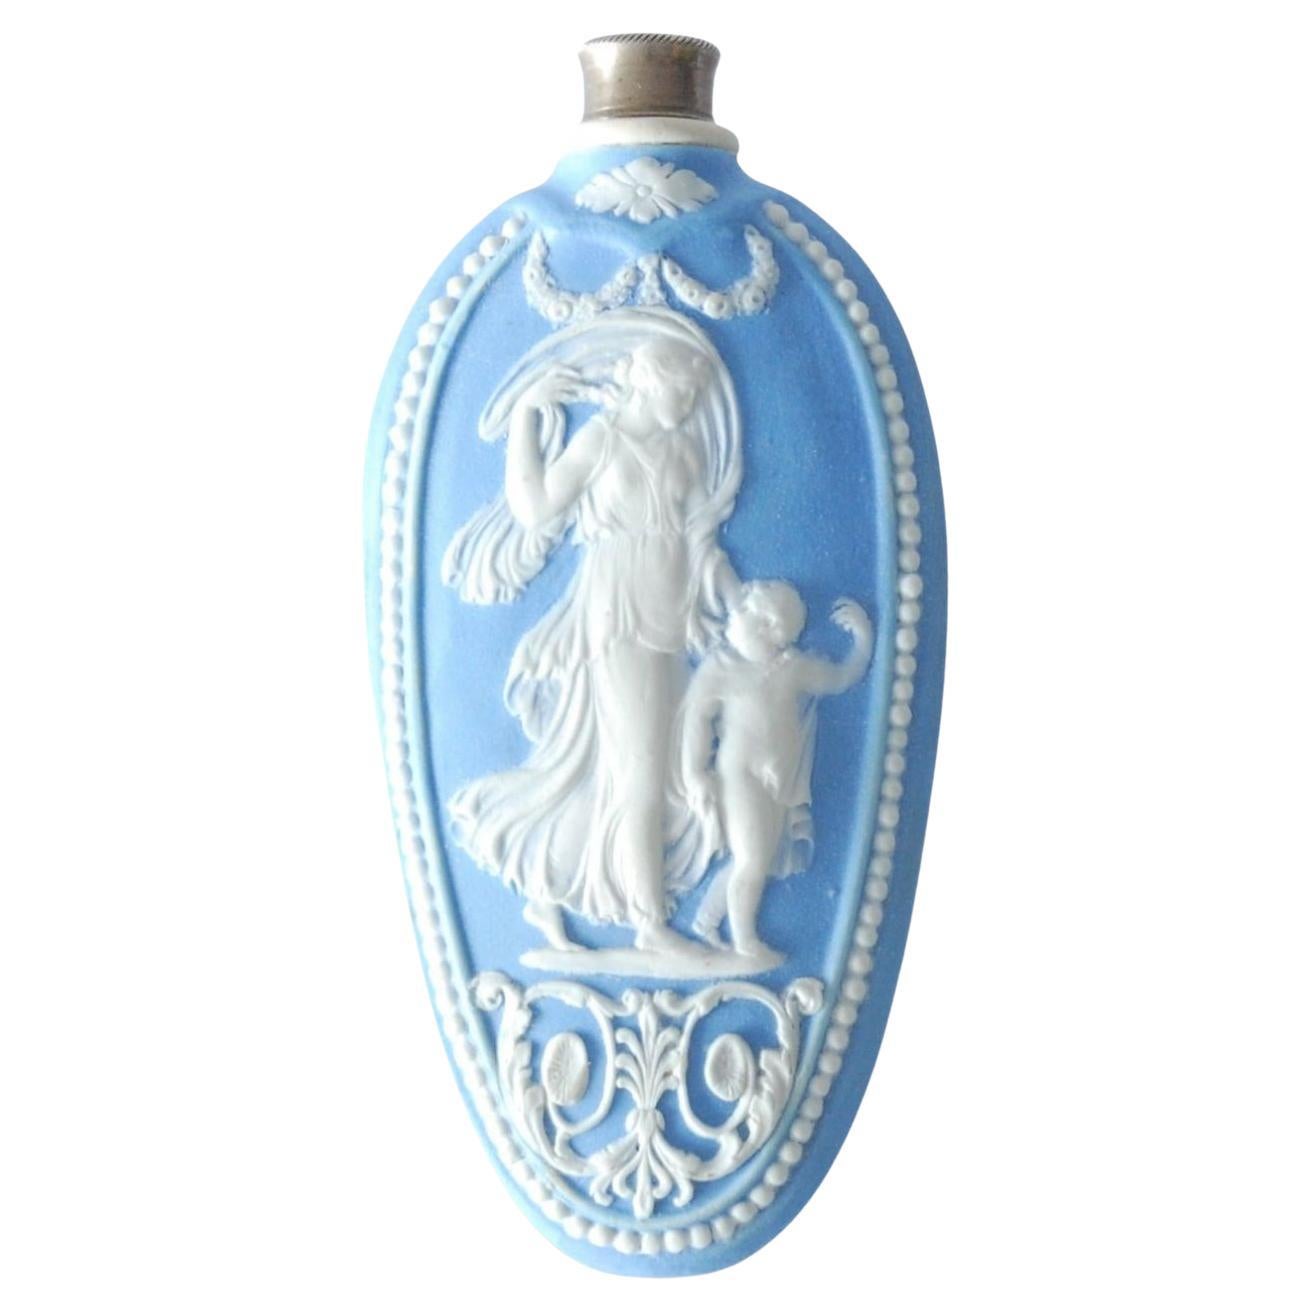 Flacon de parfum ou flacon de parfum, en jaspe bleu pâle, Wedgwood C1790